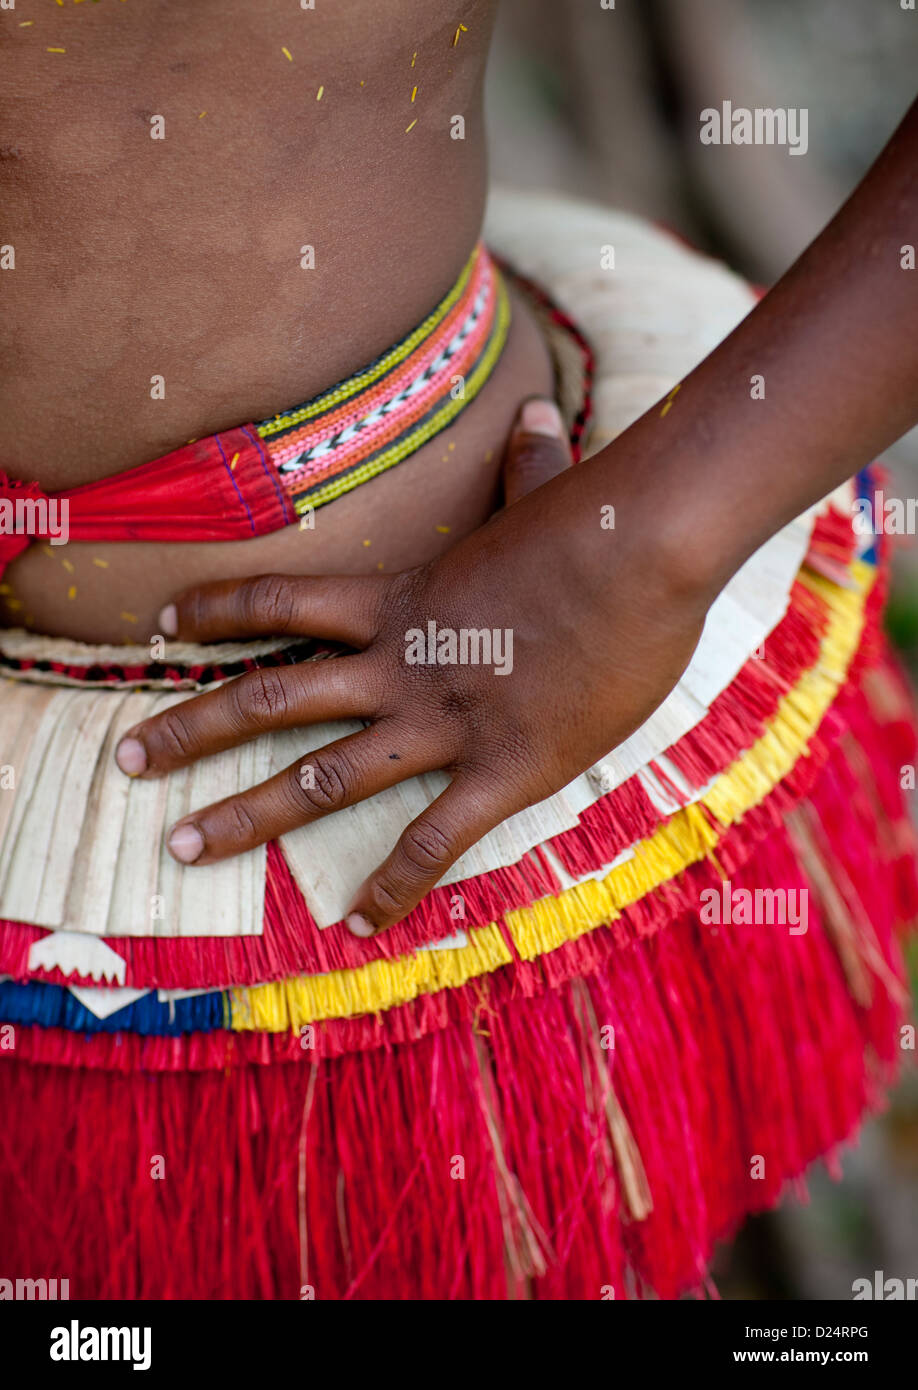 Jupe femme danseuse Tribal, île Trobriand, Papouasie Nouvelle Guinée Banque D'Images